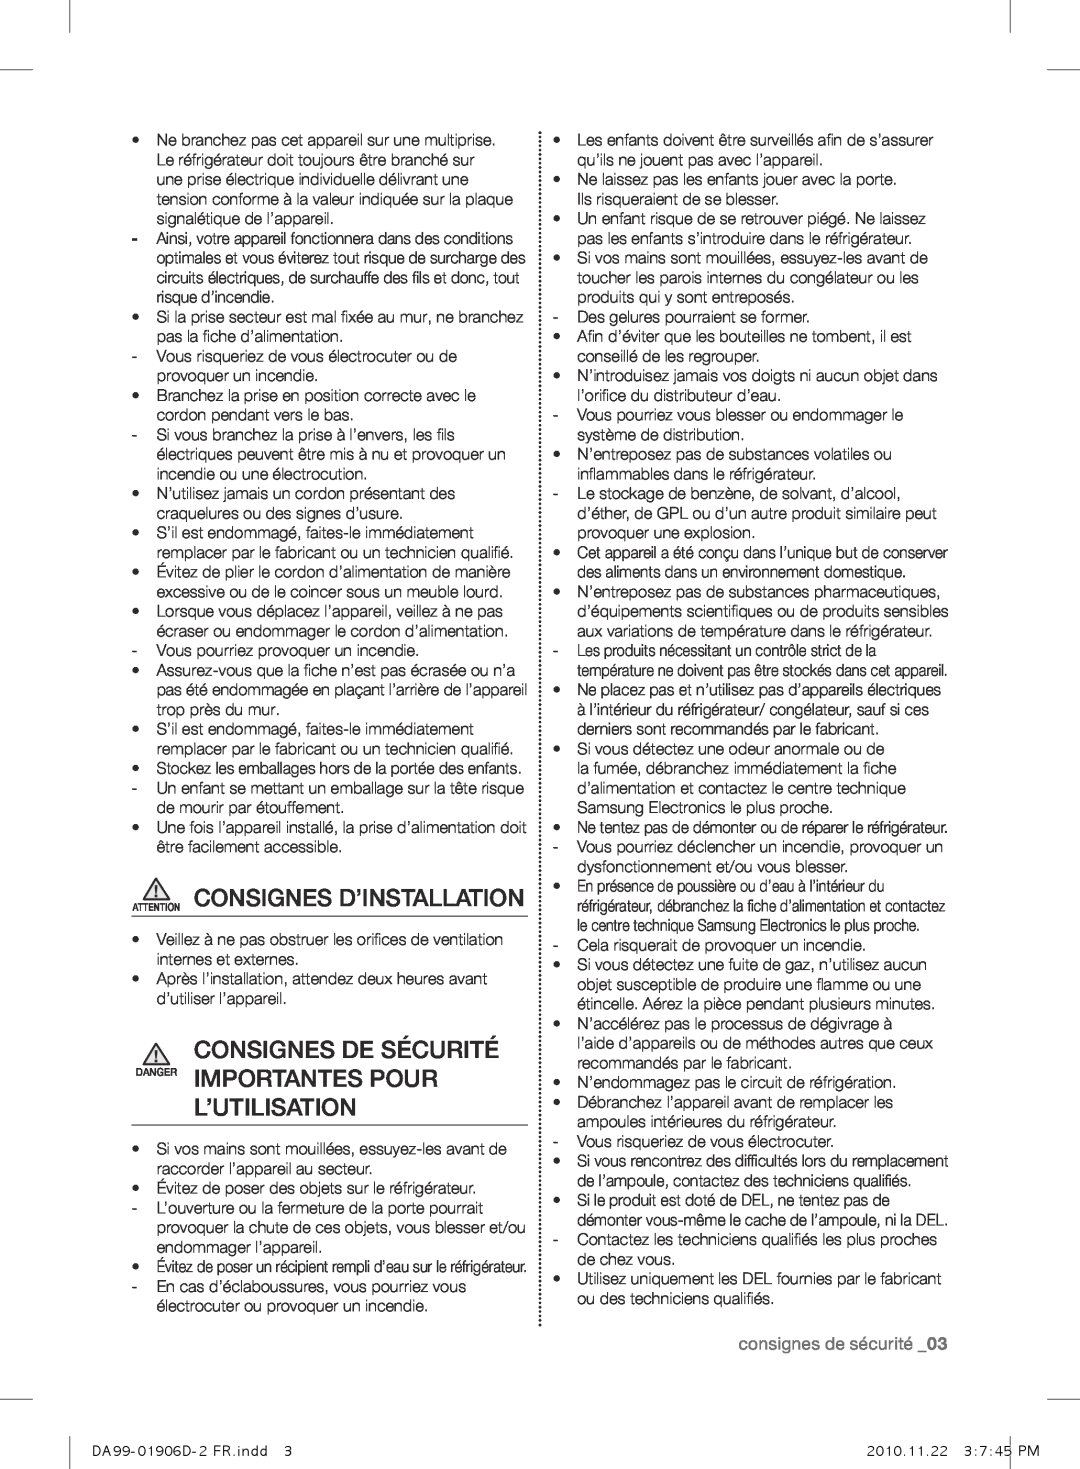 Samsung RT59QBPN1/XES Attention Consignes D’Installation, Consignes De Sécurité Danger Importantes Pour L’Utilisation 